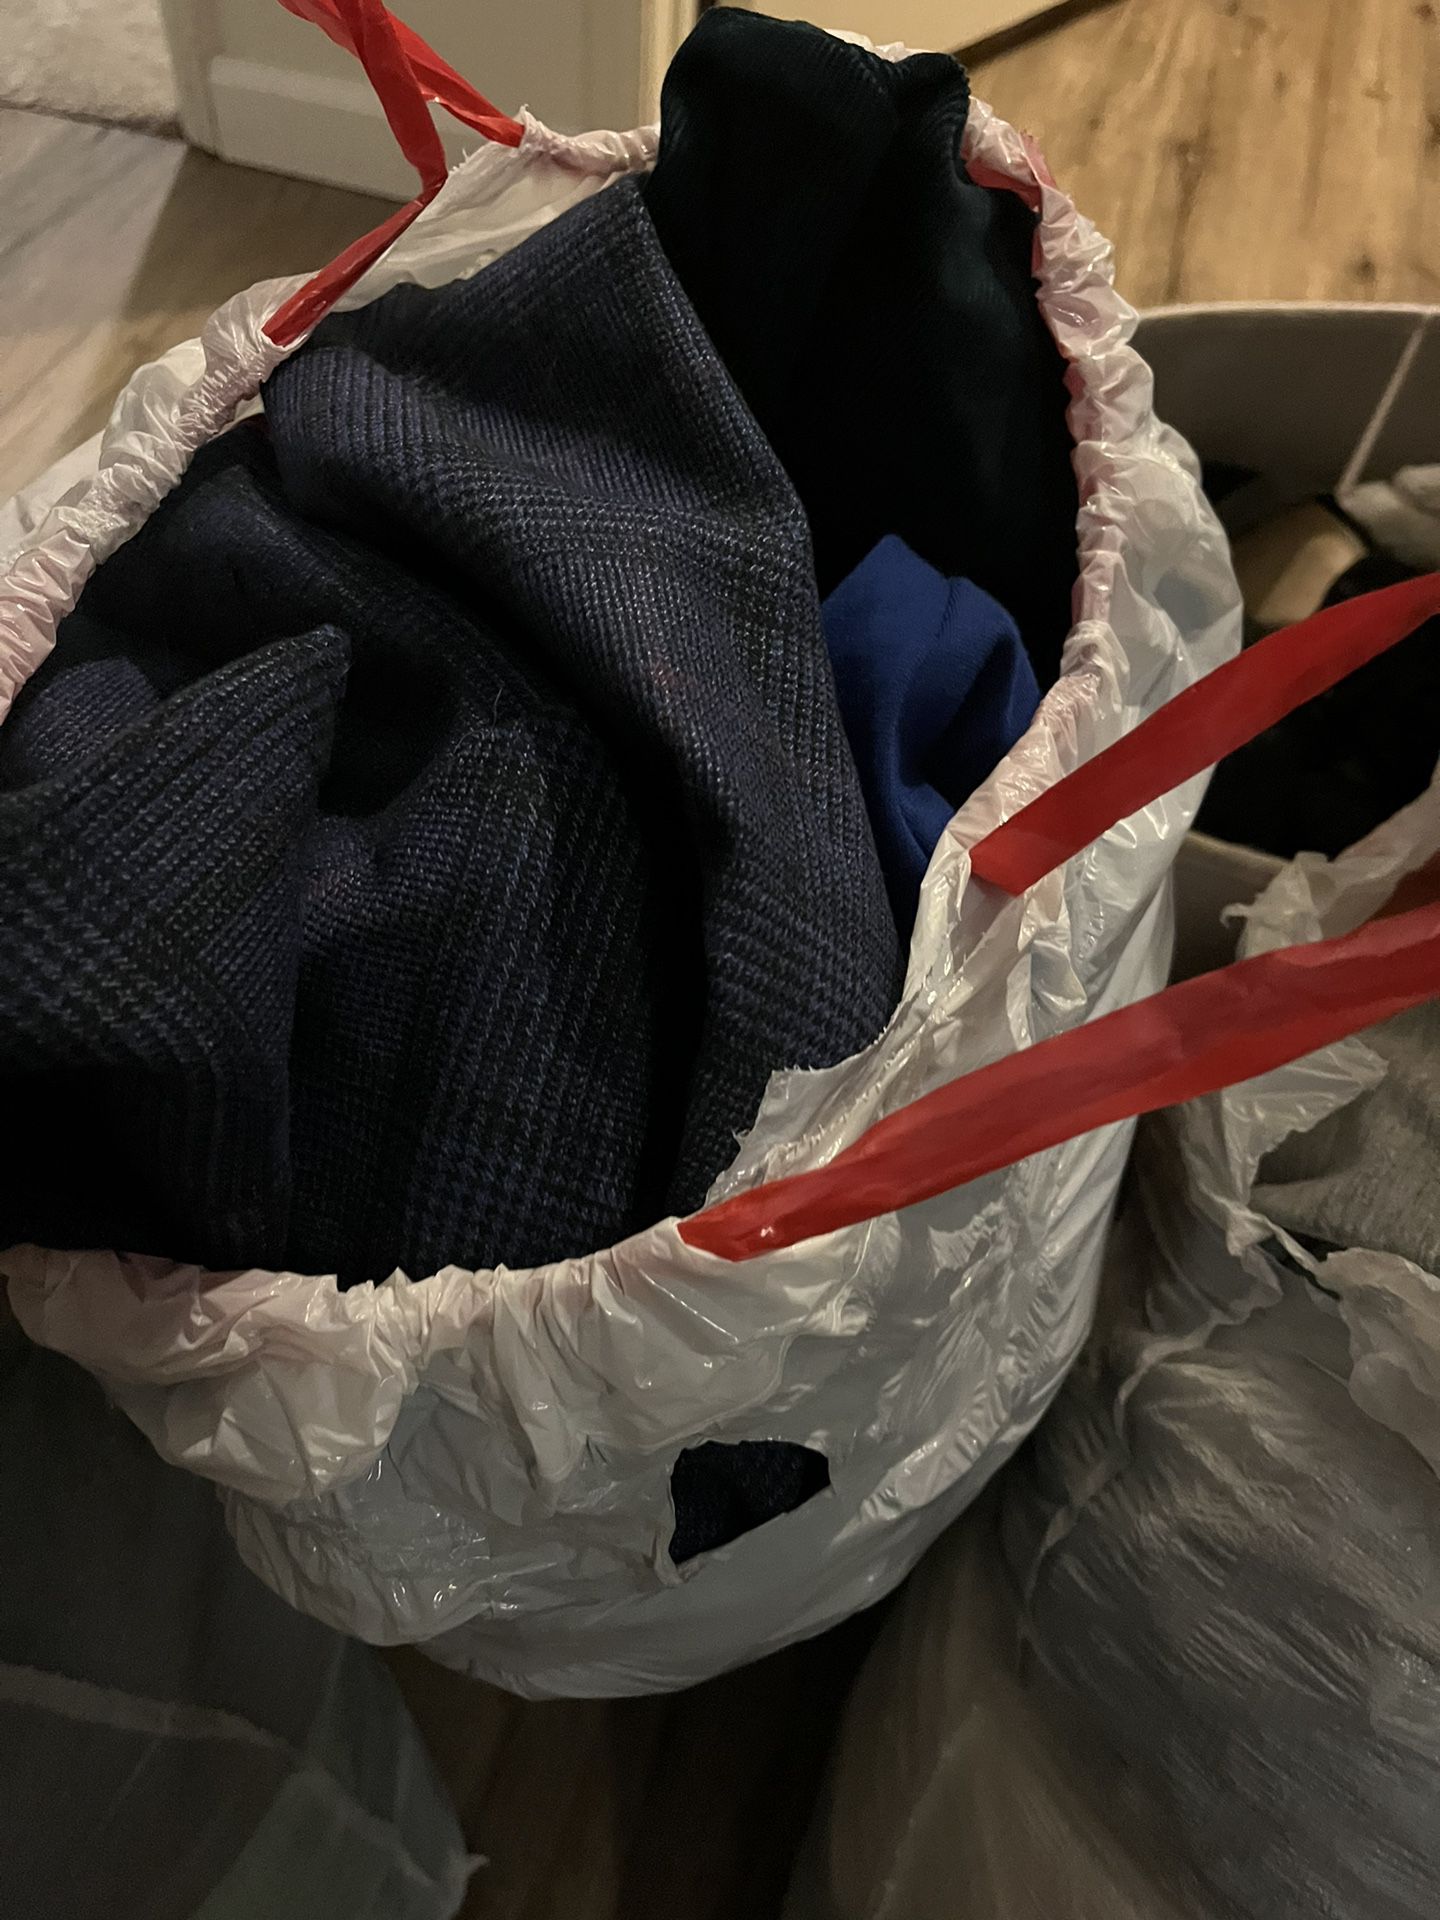 4 bolsas negras de ropa y caja gris for Sale in Chula Vista, CA - OfferUp